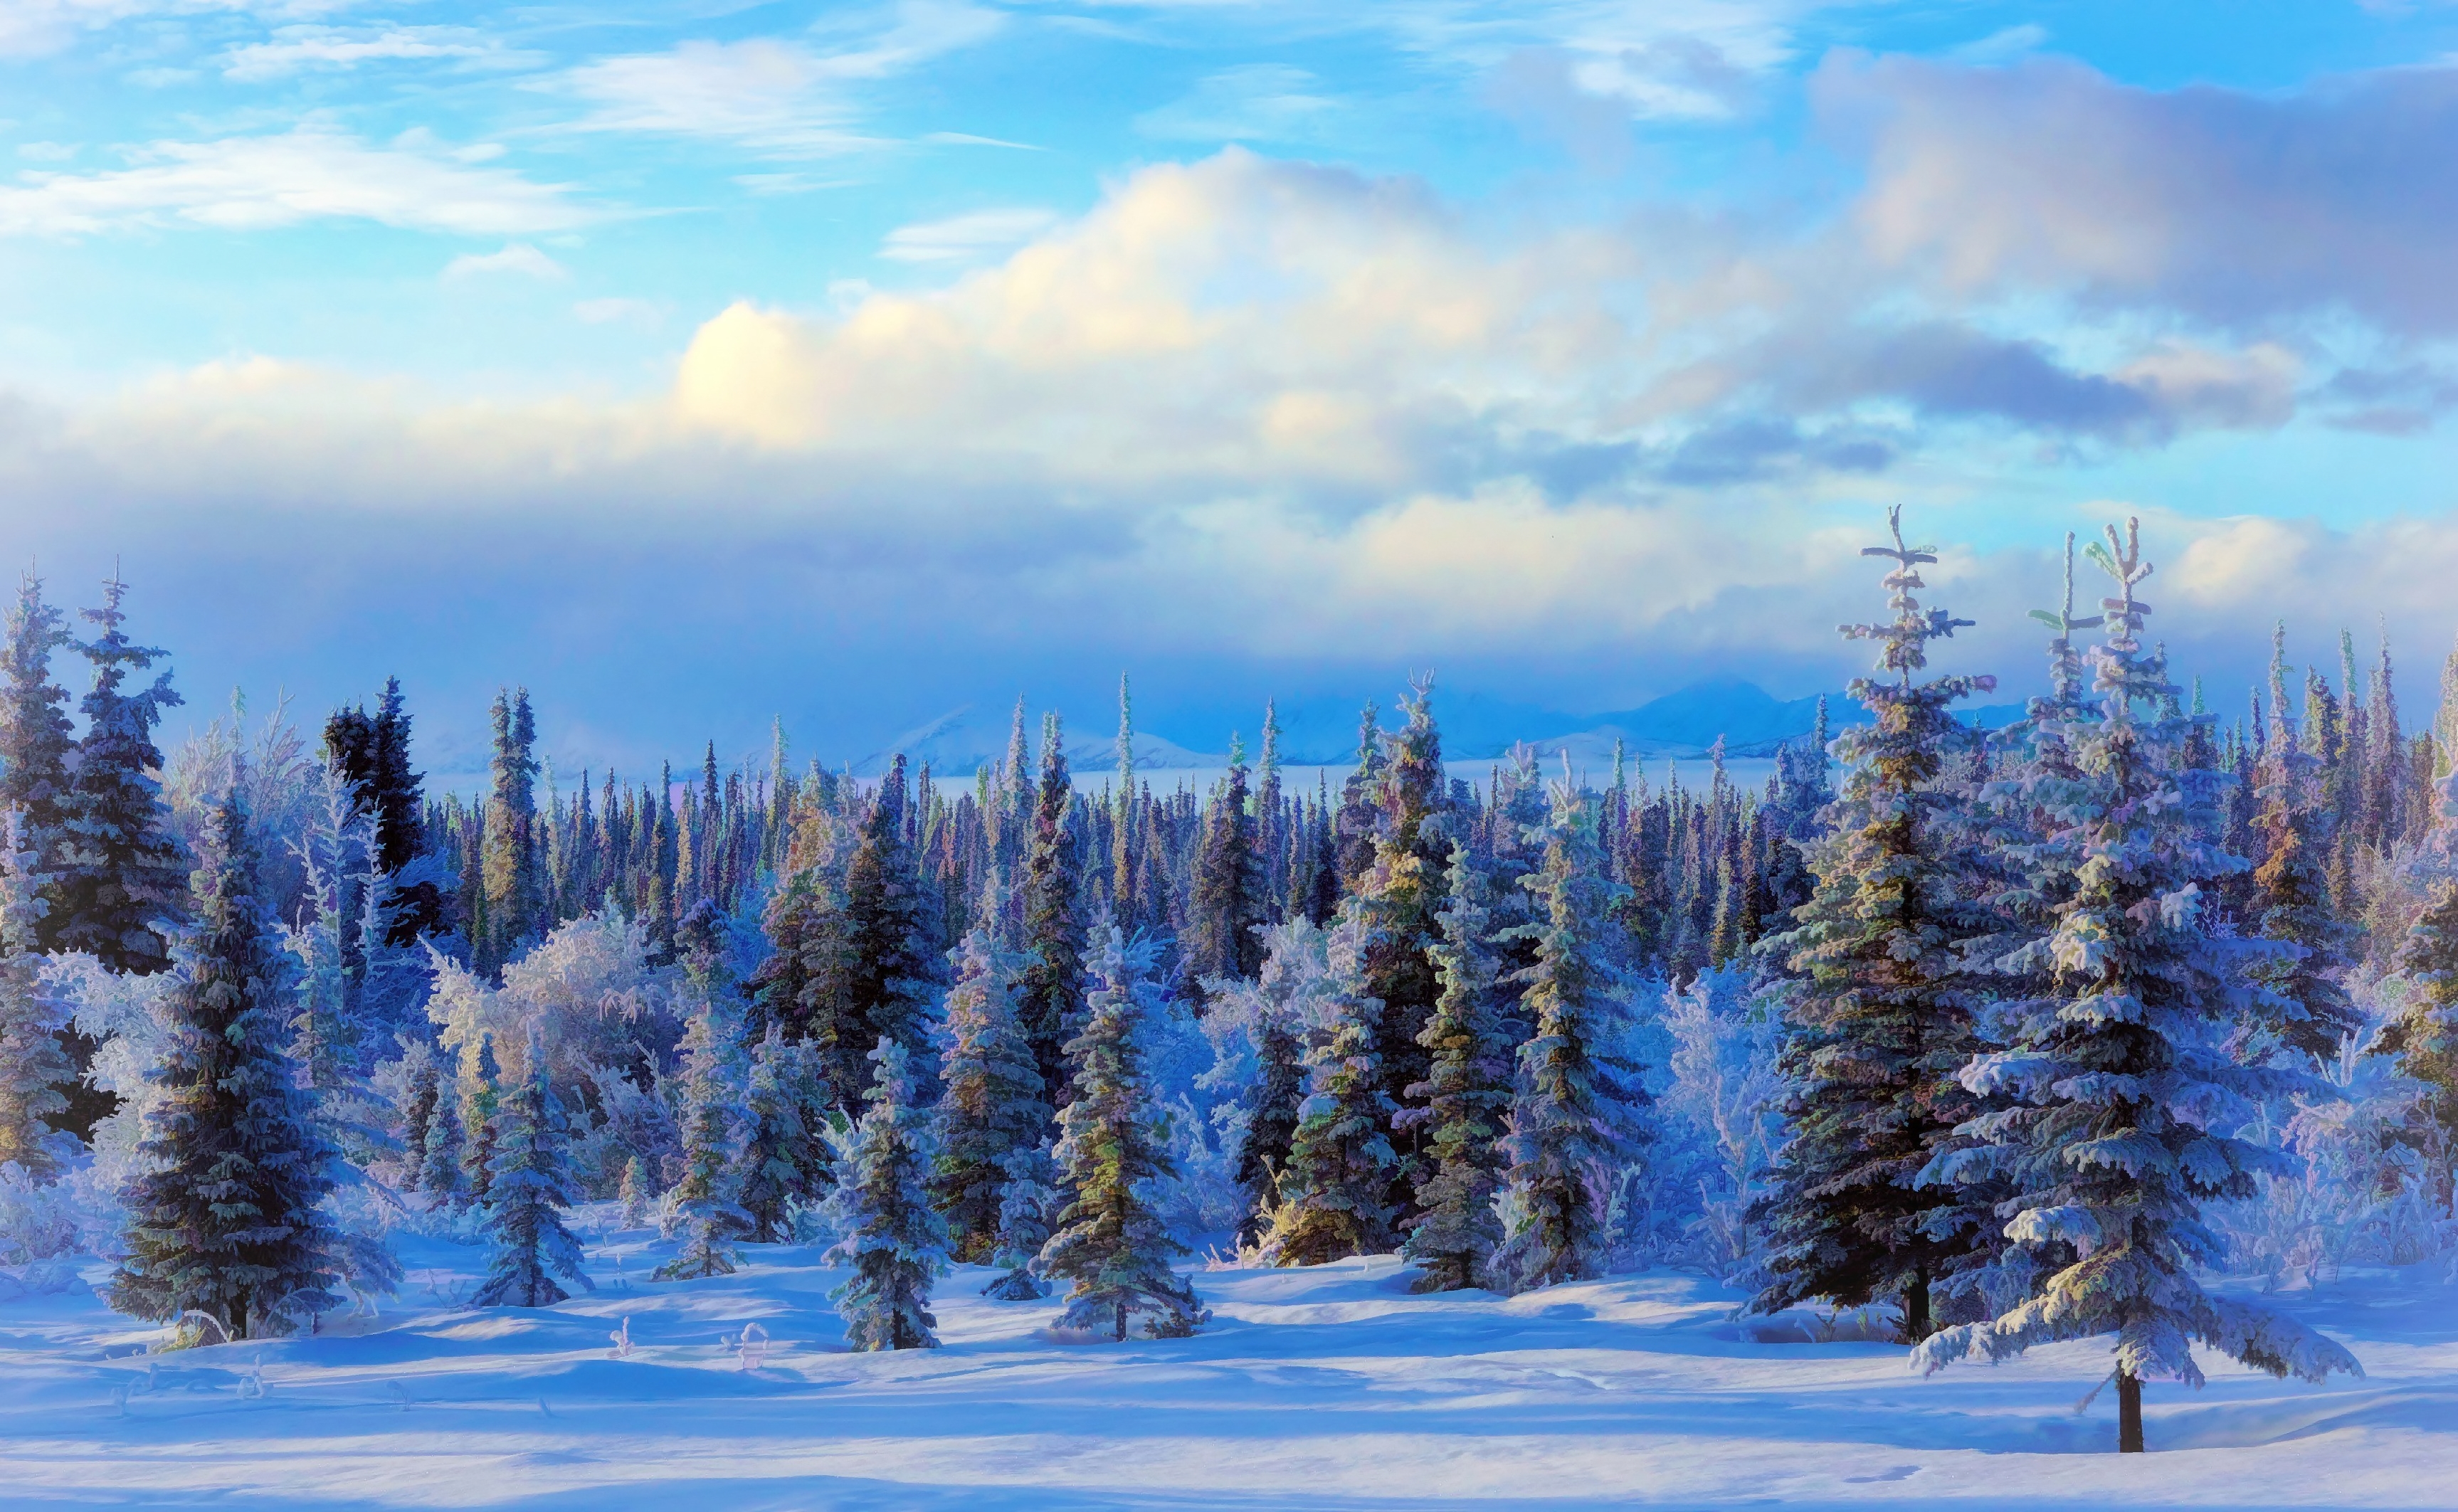 Скачать обои бесплатно Зима, Природа, Снег, Лес, Дерево, Картина, Художественные картинка на рабочий стол ПК